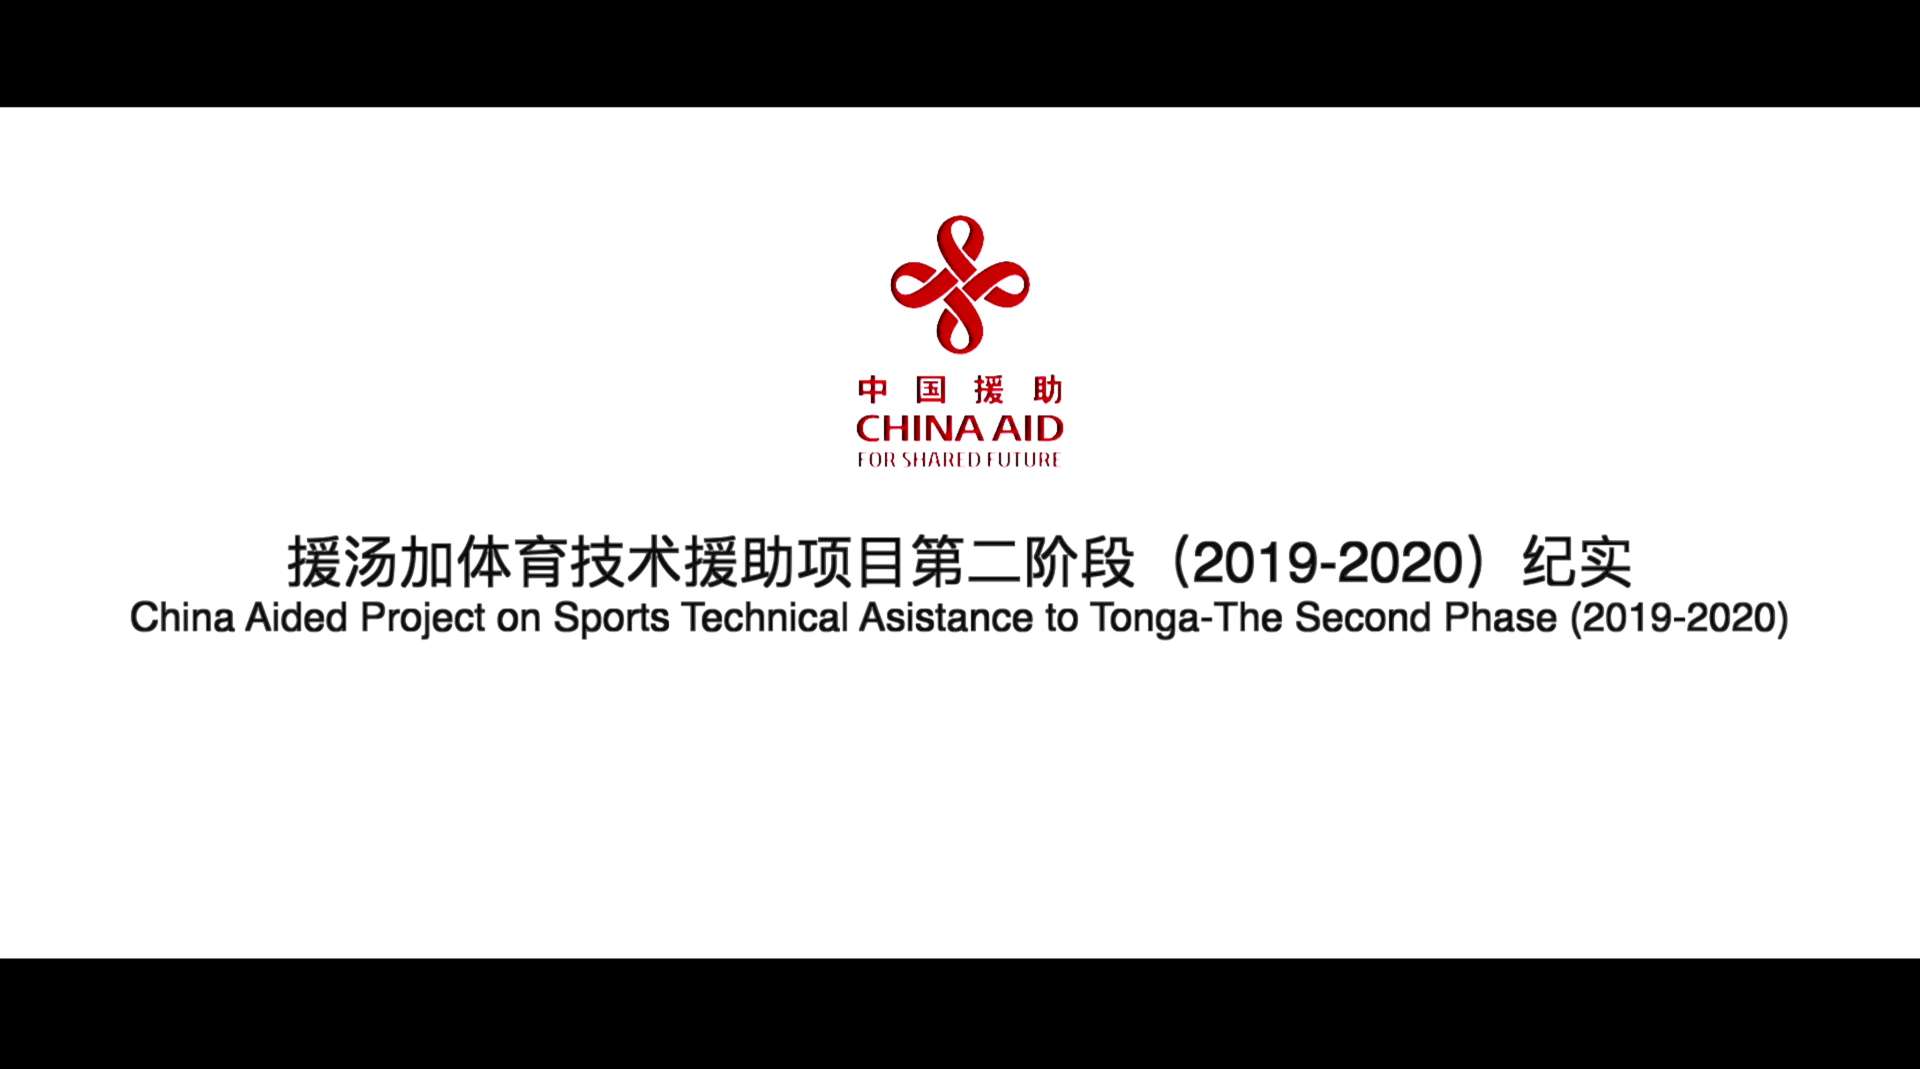 援汤加体育技术项目援助第二阶段（2019-2020）纪实